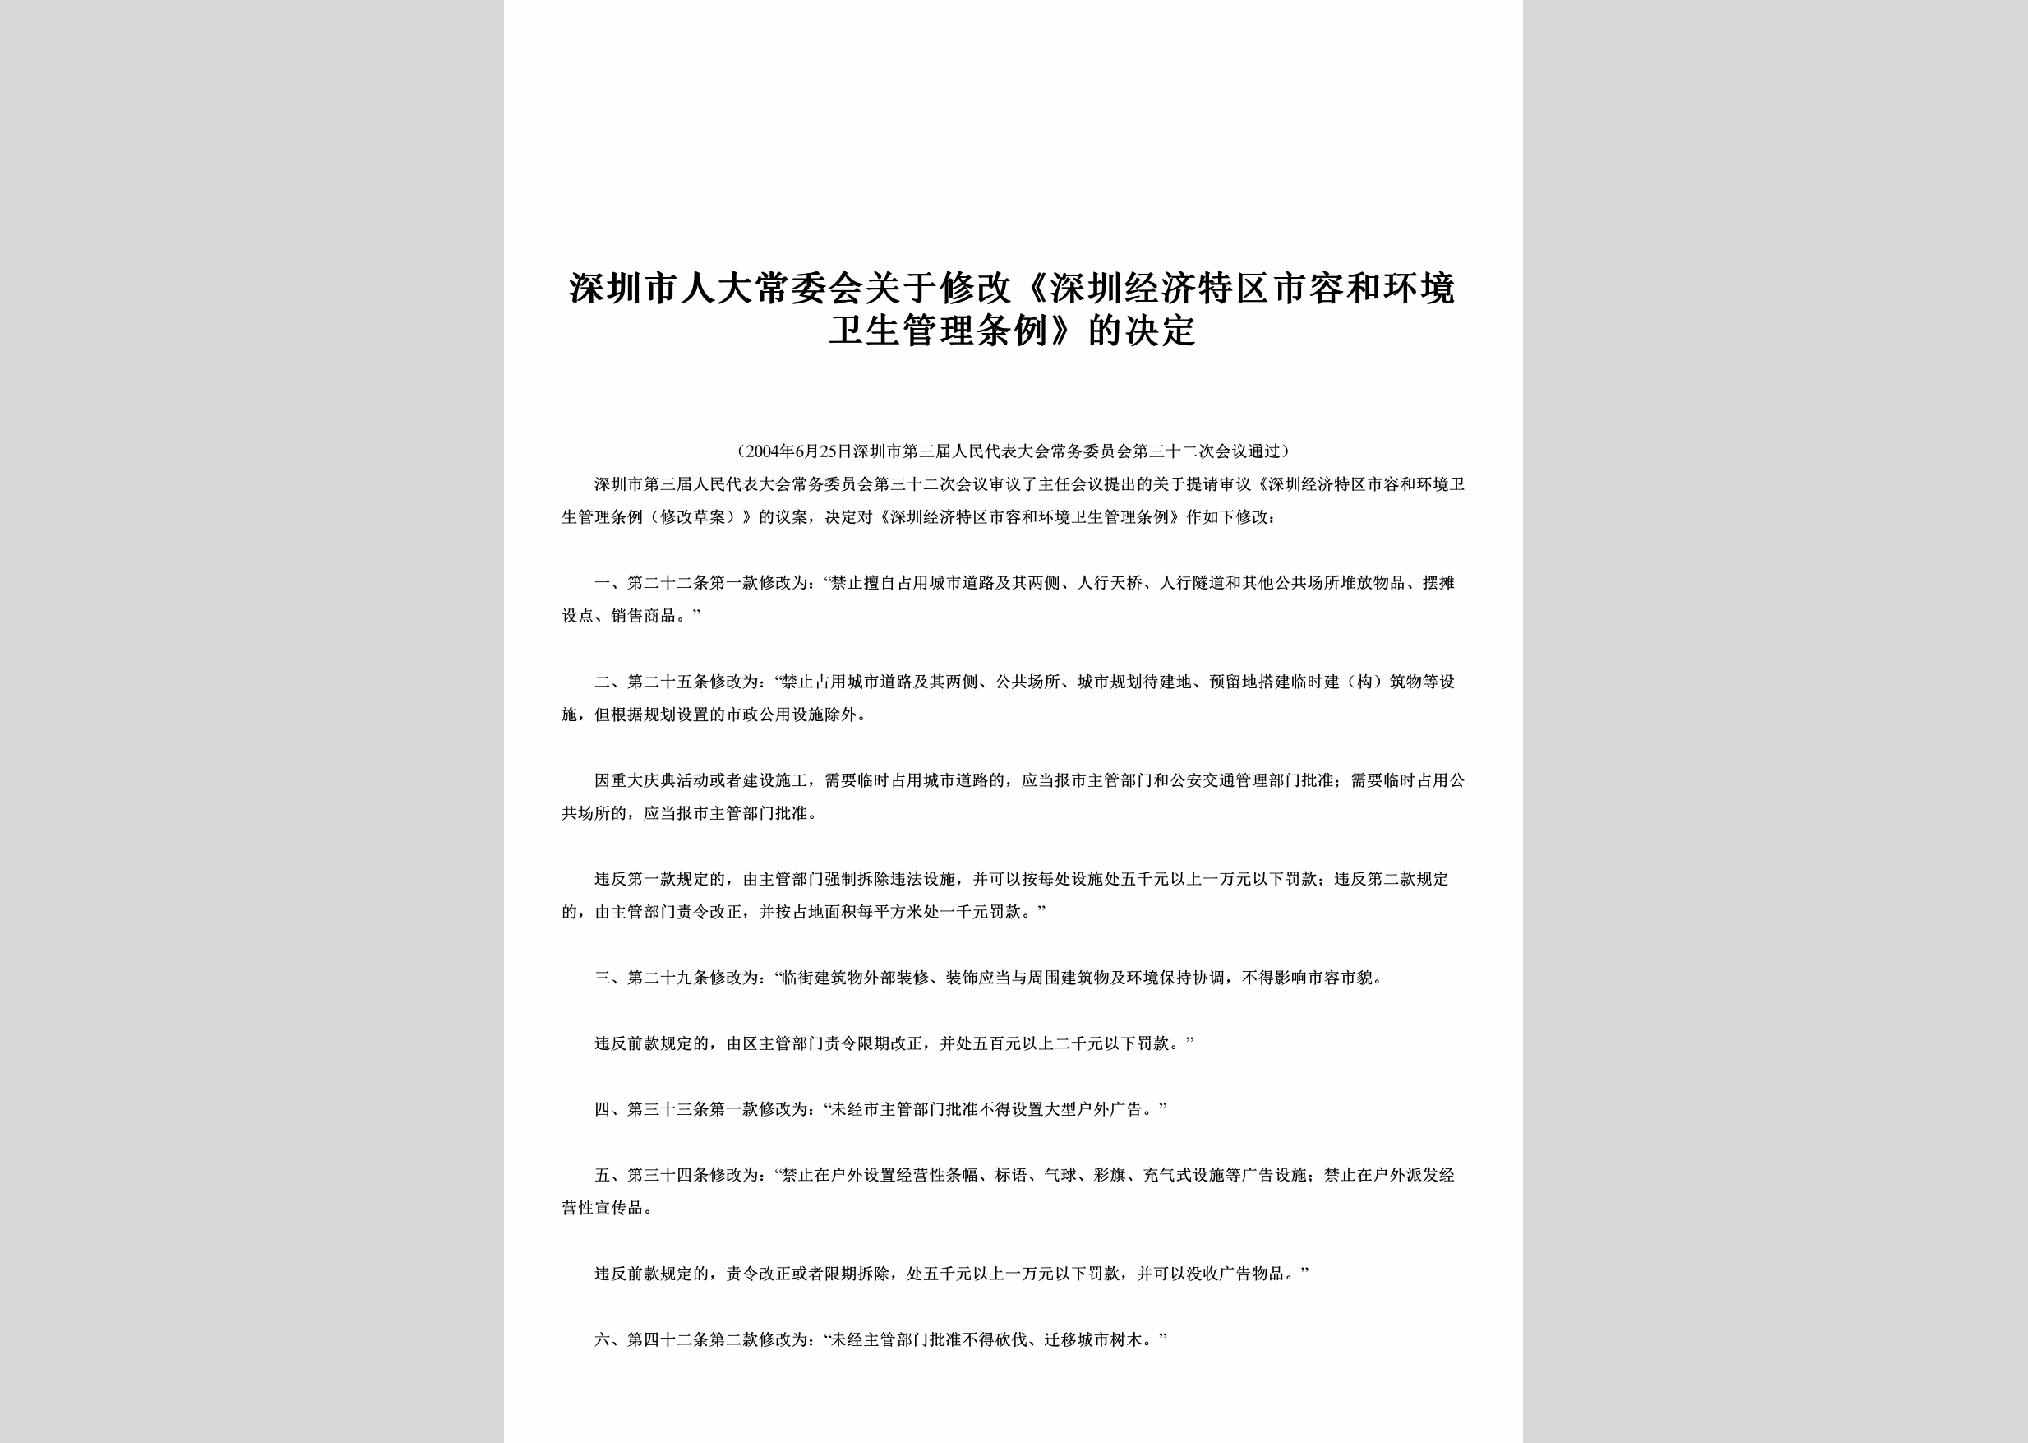 GD-SRHJWSTL-2004：关于修改《深圳经济特区市容和环境卫生管理条例》的决定